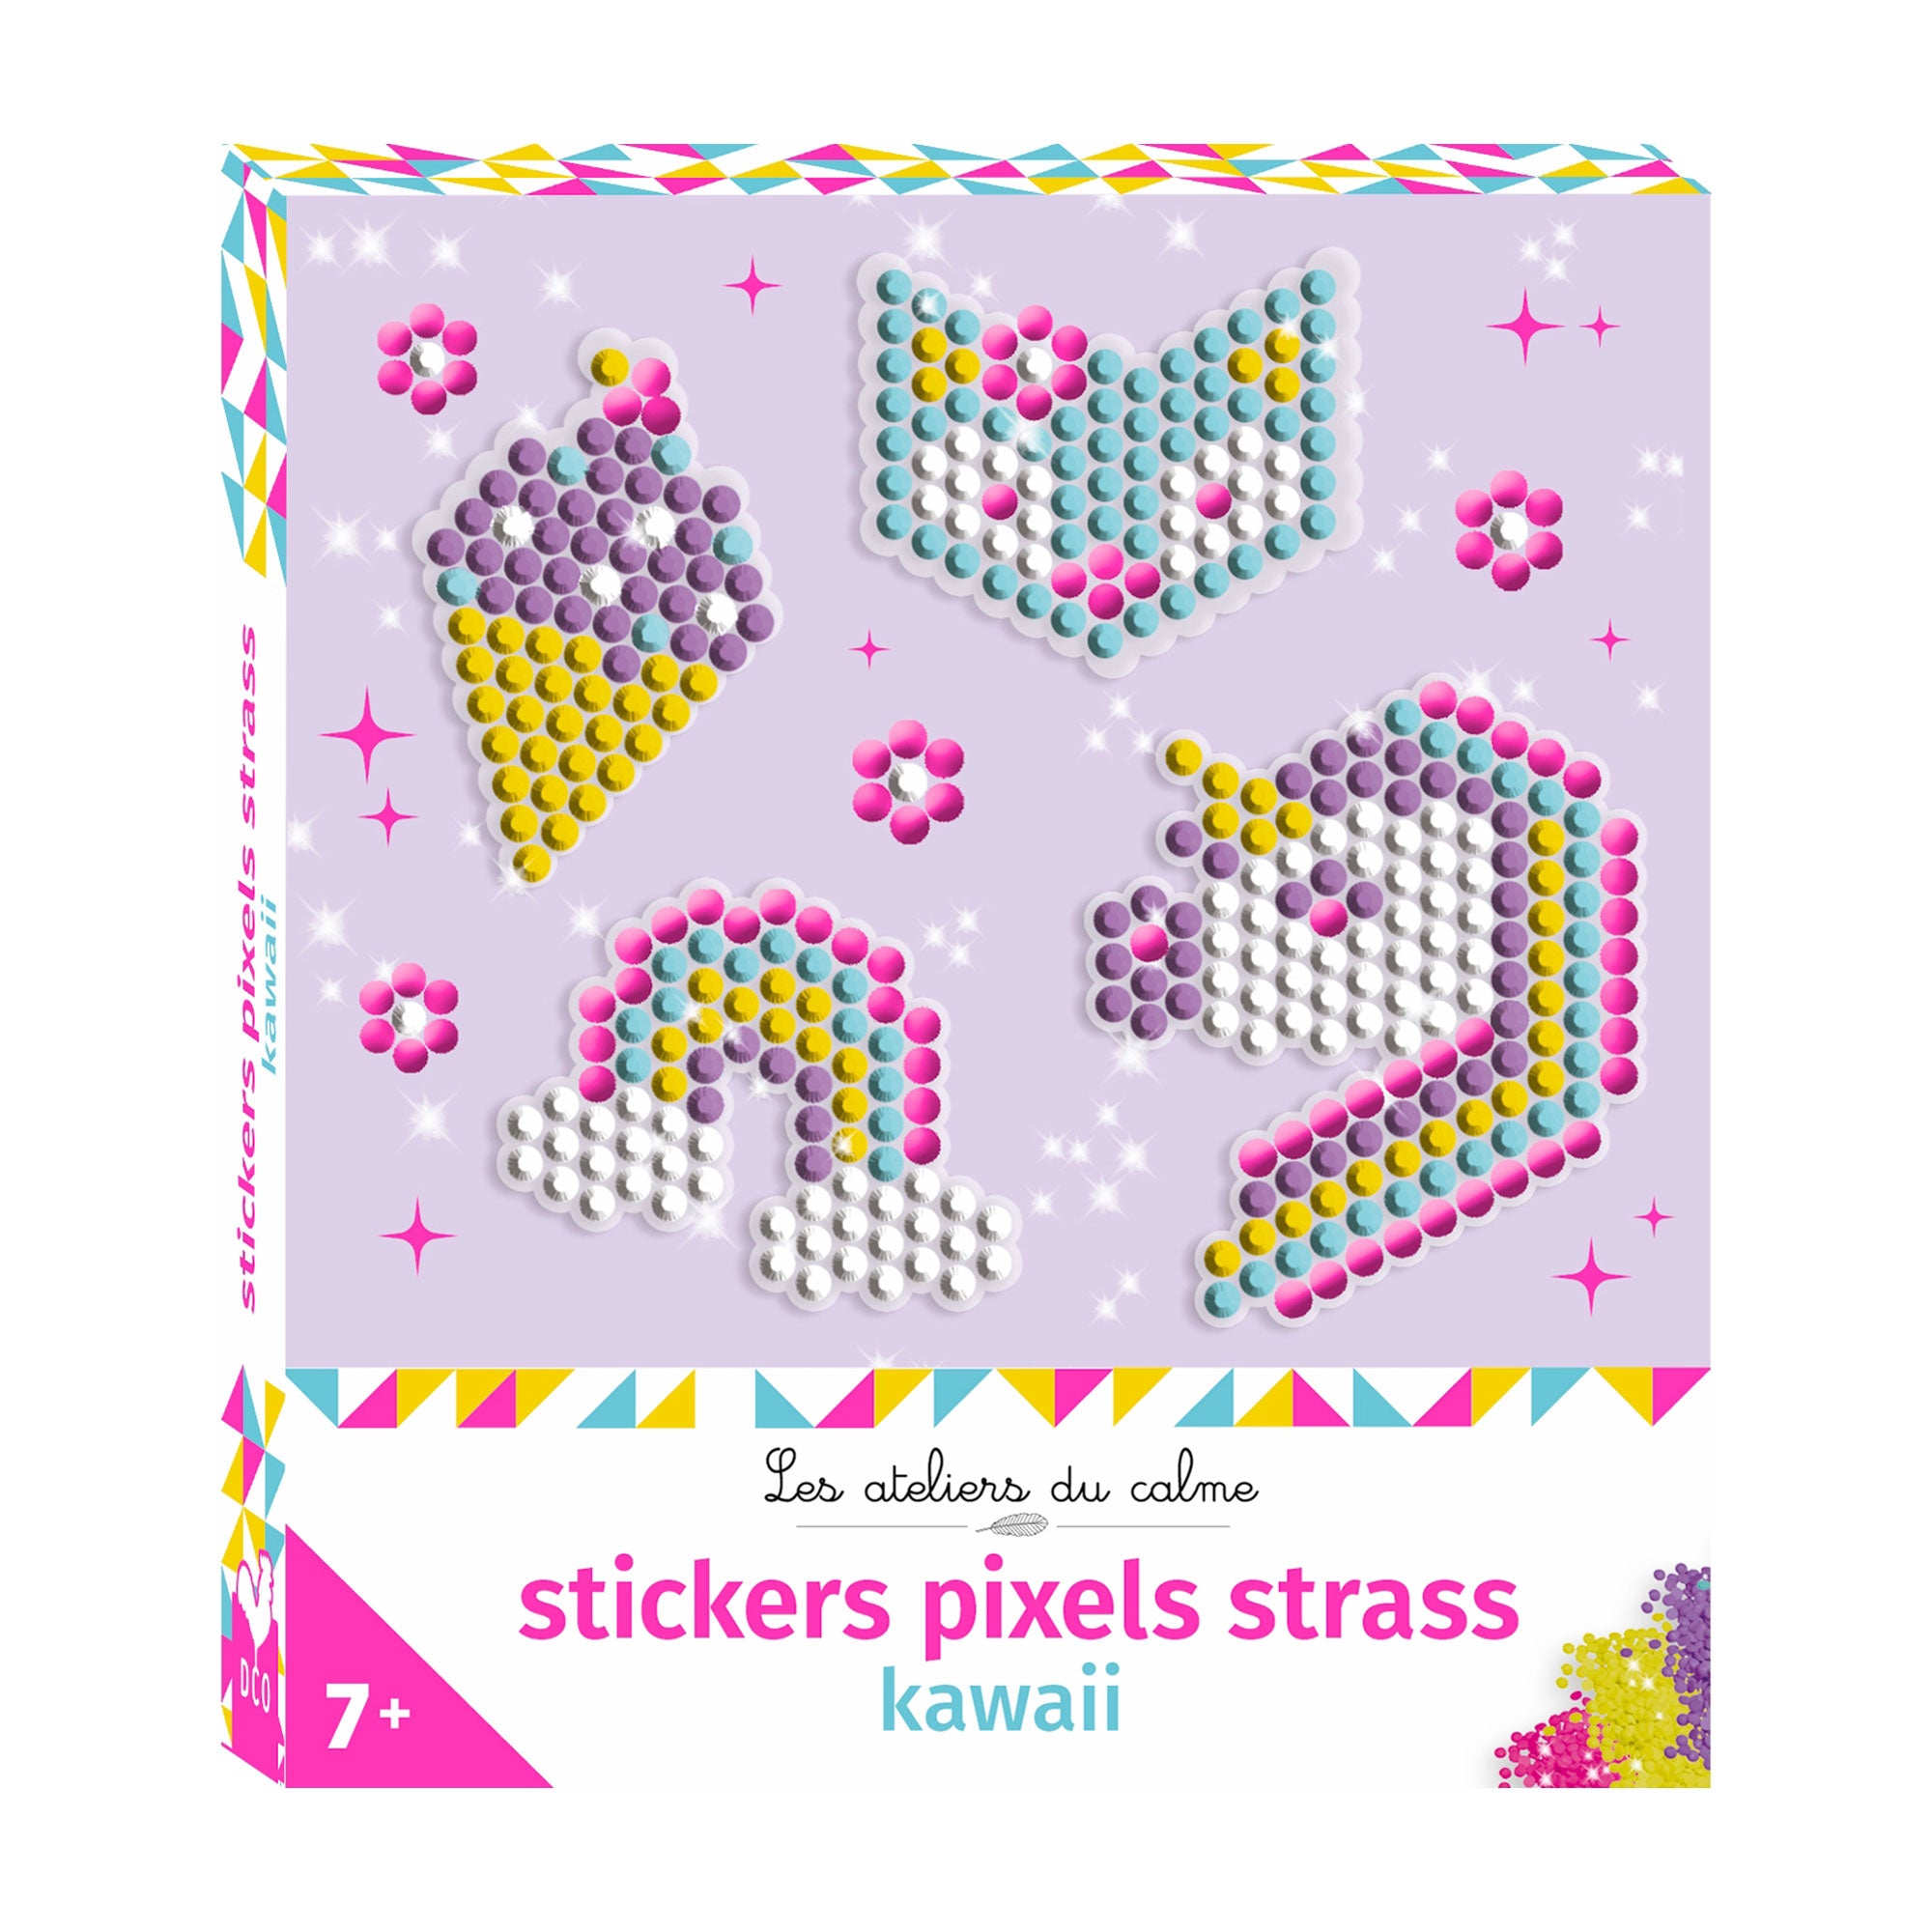 Stickers pixels strass : Kawaii